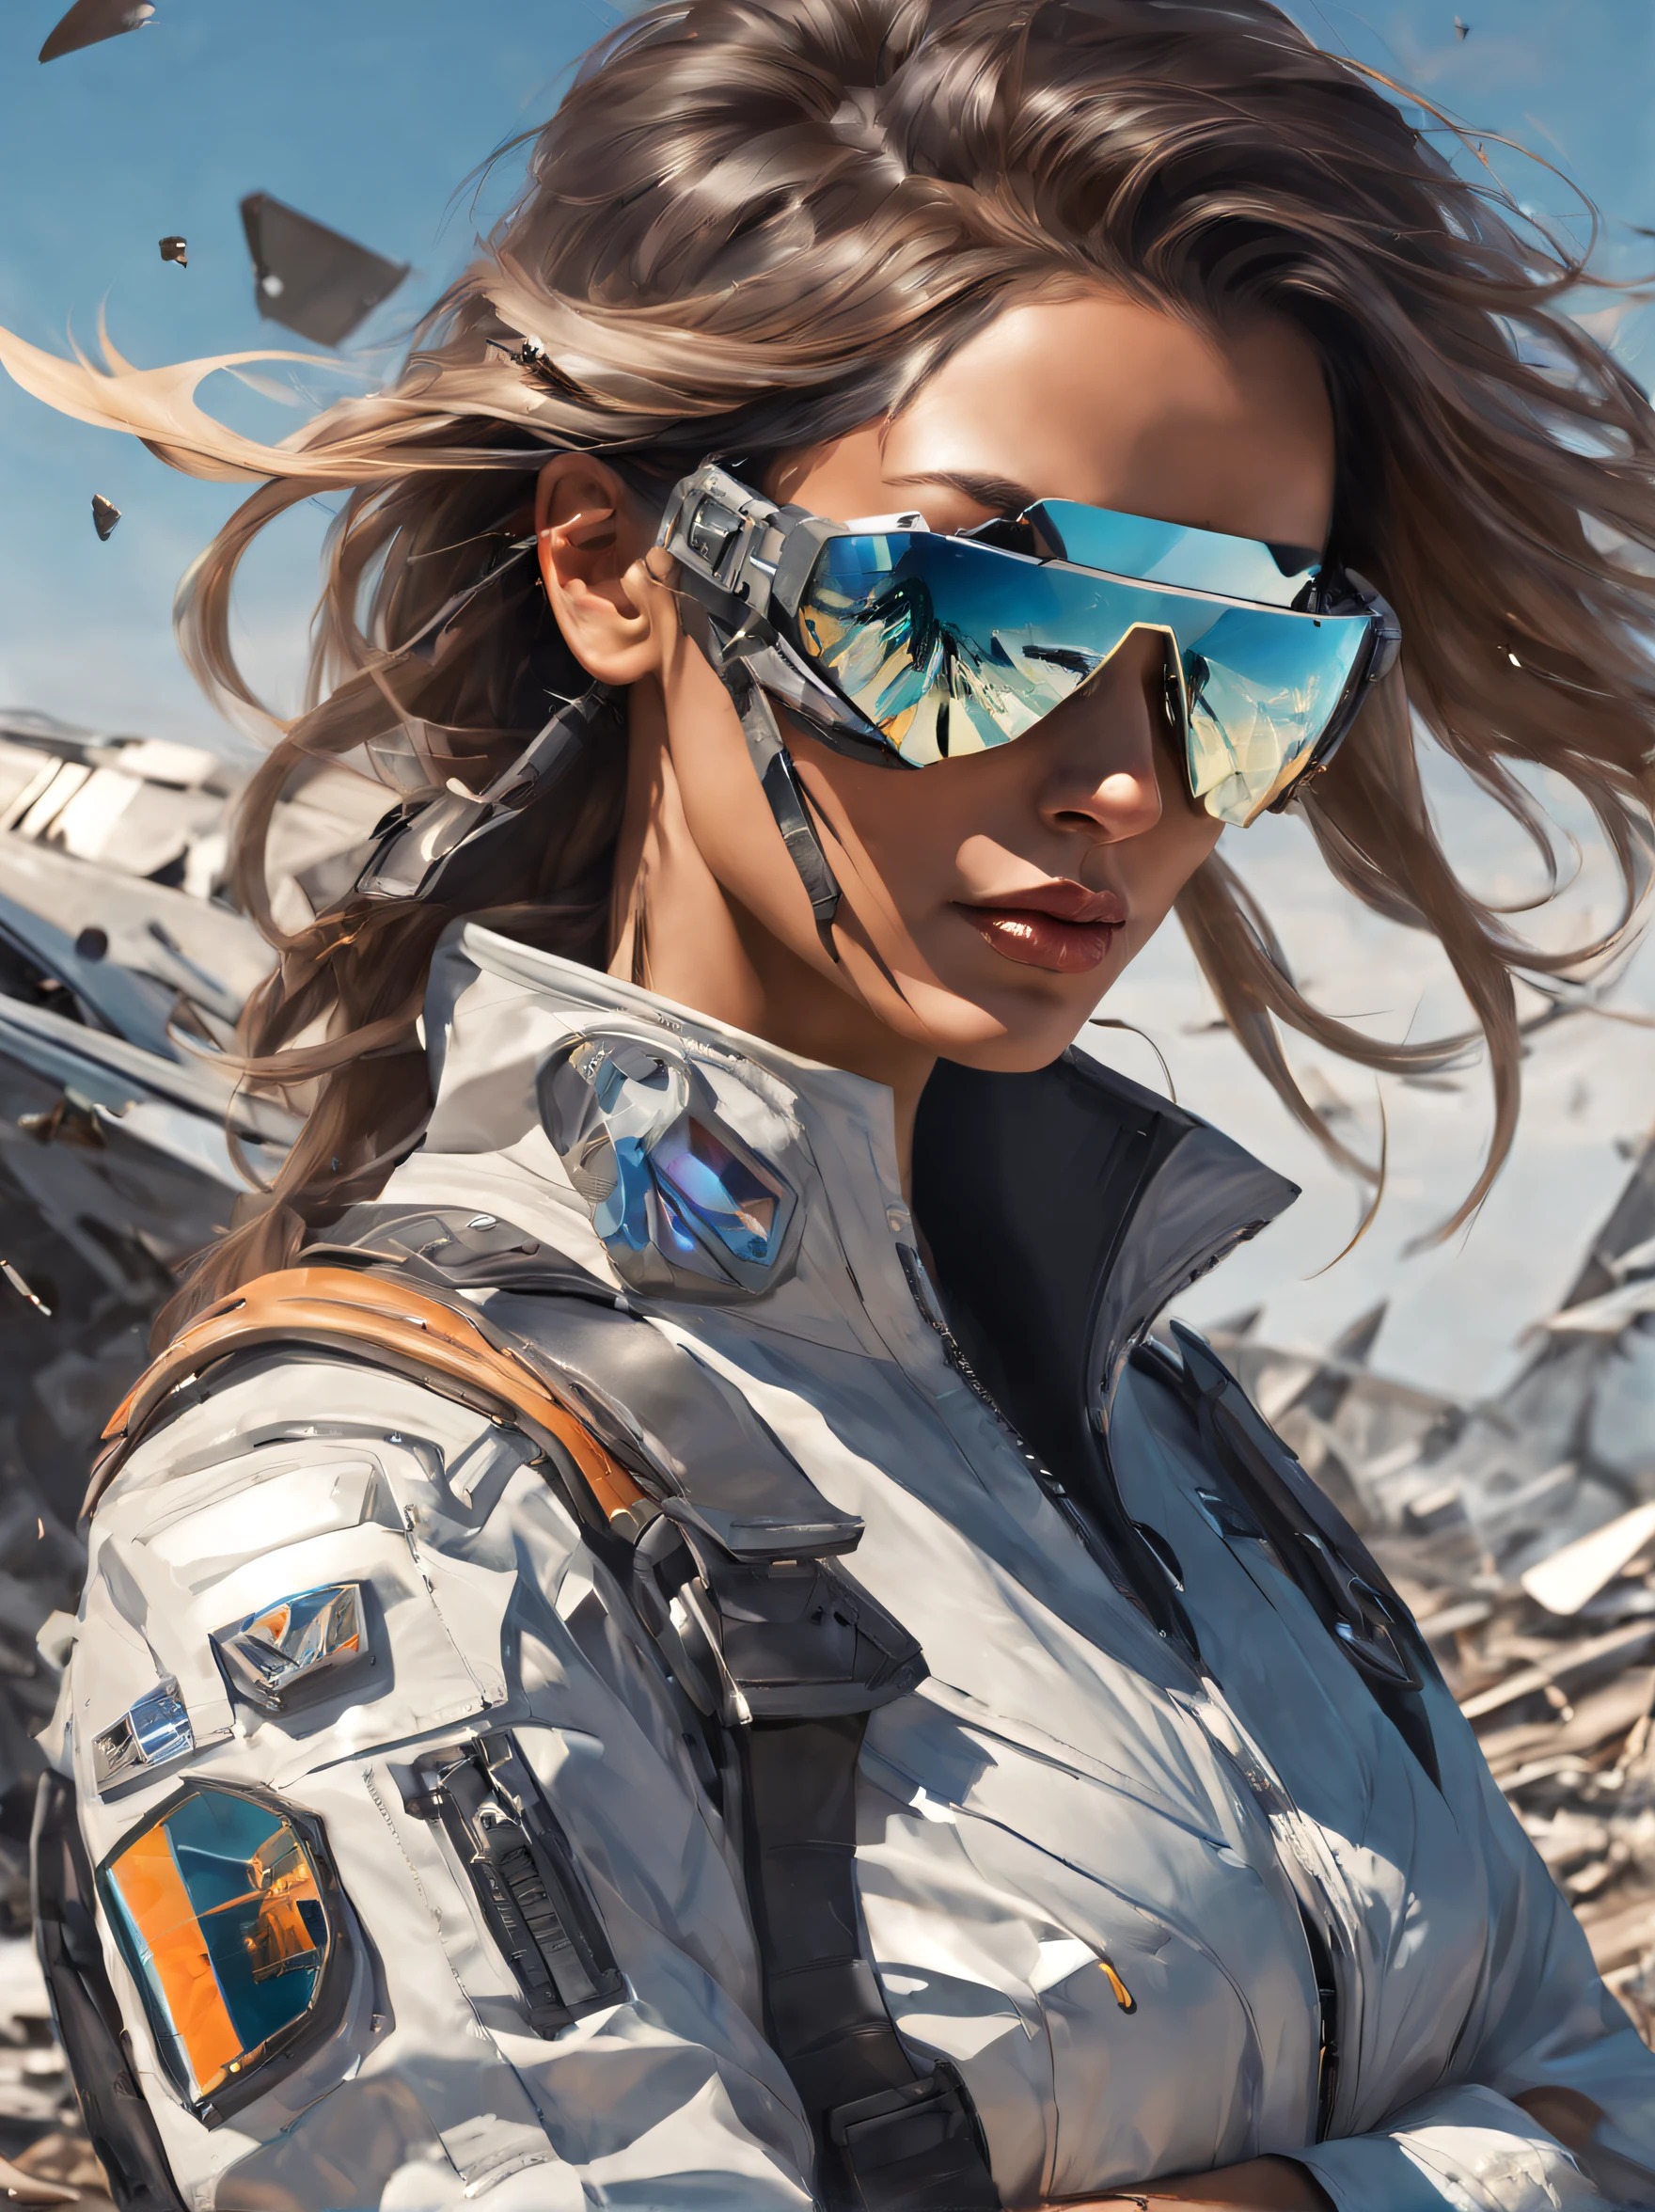 Uma piloto aviadora futurista do lado de fora usando óculos de sol espelhados quebrados que refletem os destroços de seu avião --ar 2:3 --v 4